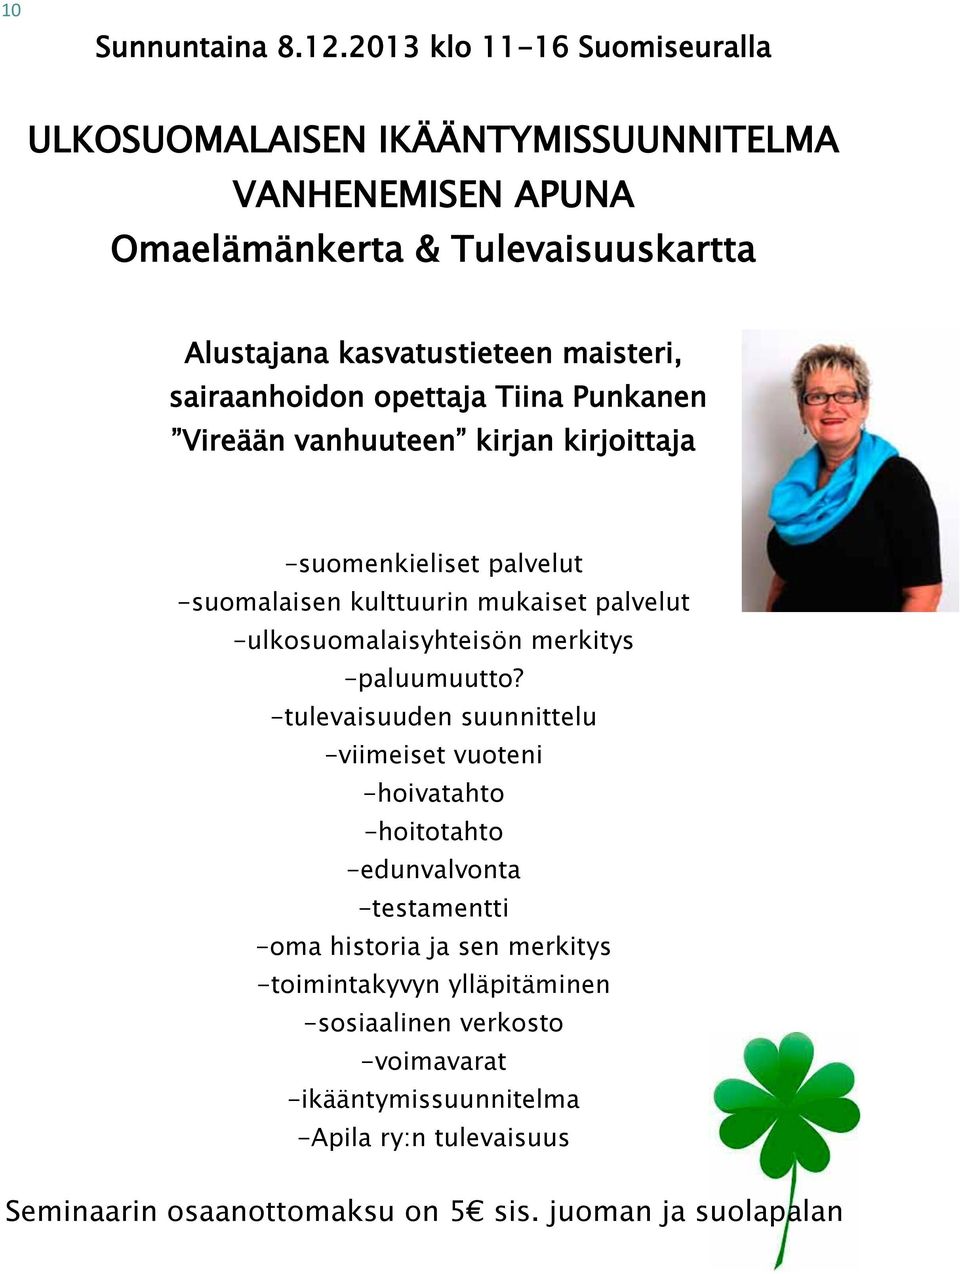 sairaanhoidon opettaja Tiina Punkanen Vireään vanhuuteen kirjan kirjoittaja -suomenkieliset palvelut -suomalaisen kulttuurin mukaiset palvelut